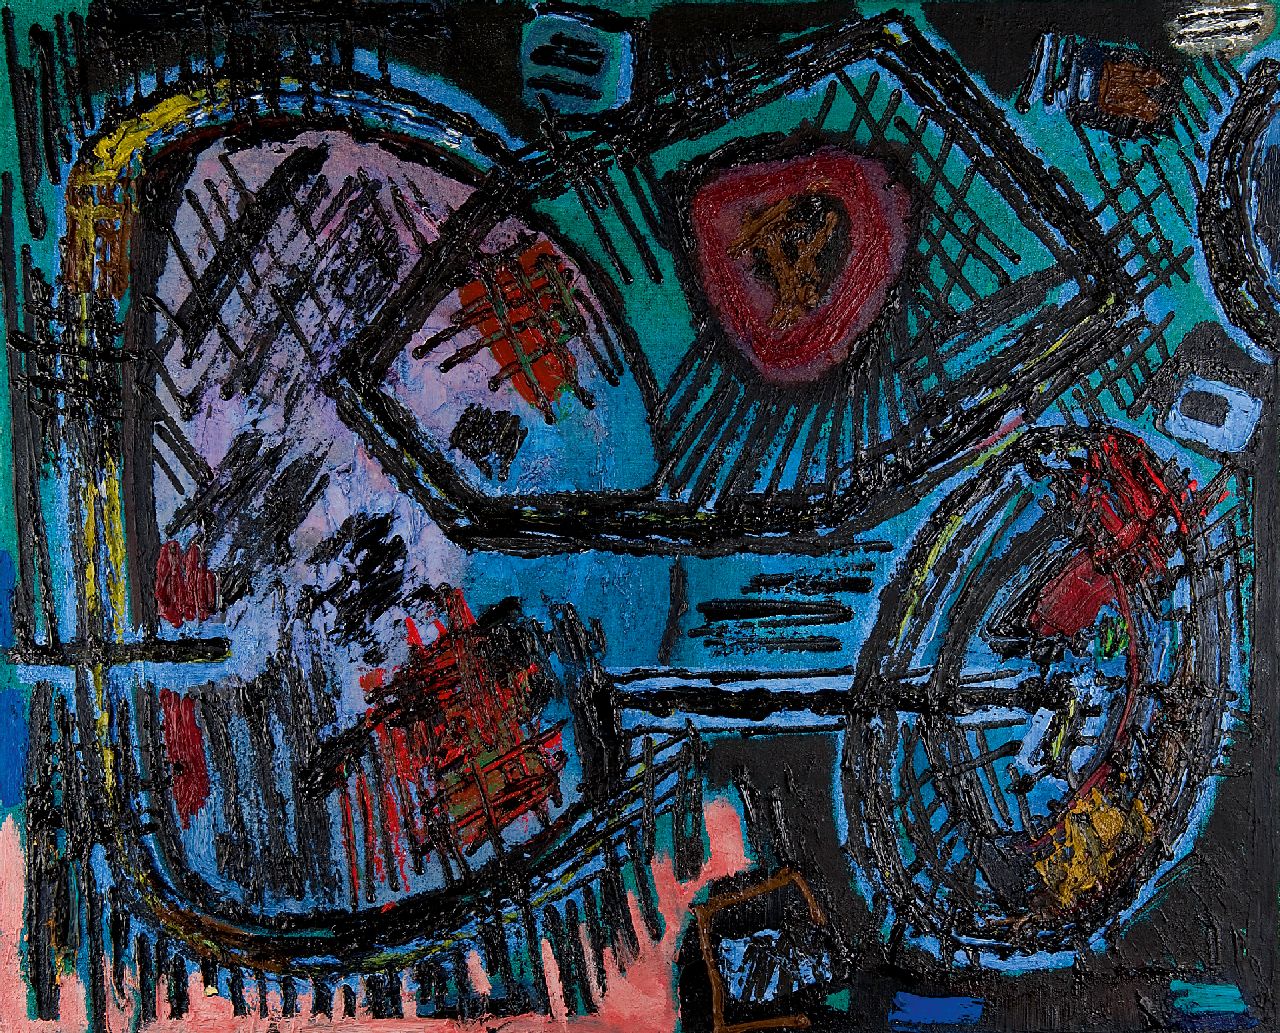 Hussem W.F.K.  | 'Willem' Frans Karel Hussem | Schilderijen te koop aangeboden | Compositie 1959, olieverf op doek 80,4 x 100,2 cm, gesigneerd verso en verso gedateerd '59